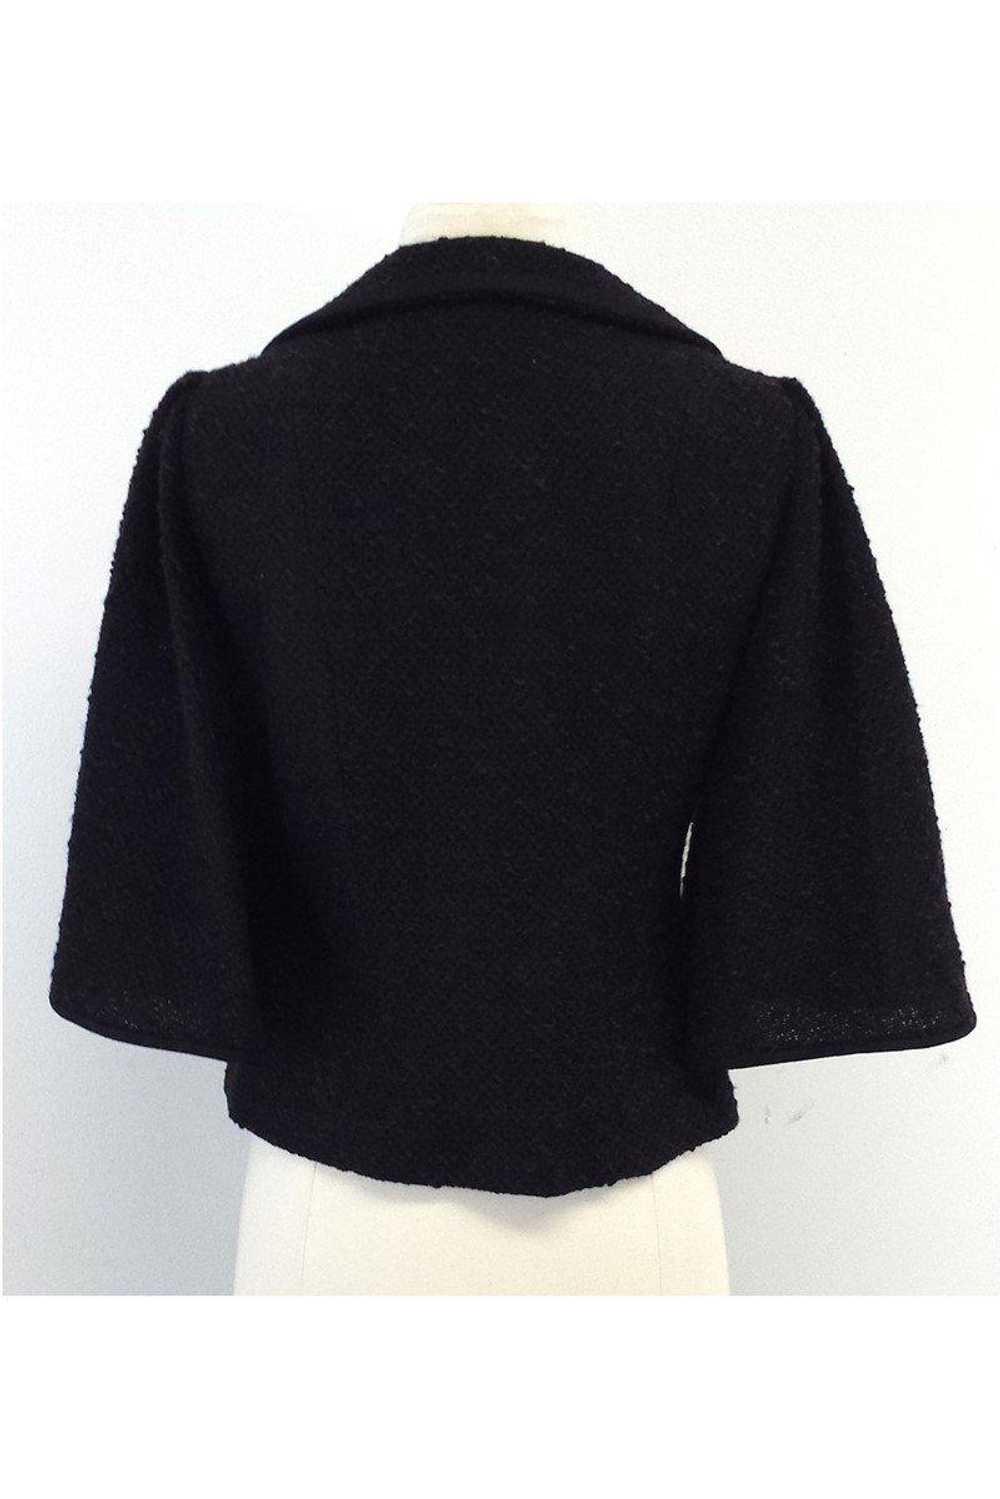 Nanette Lepore - Brown Textured Suit Jacket Sz M - image 3